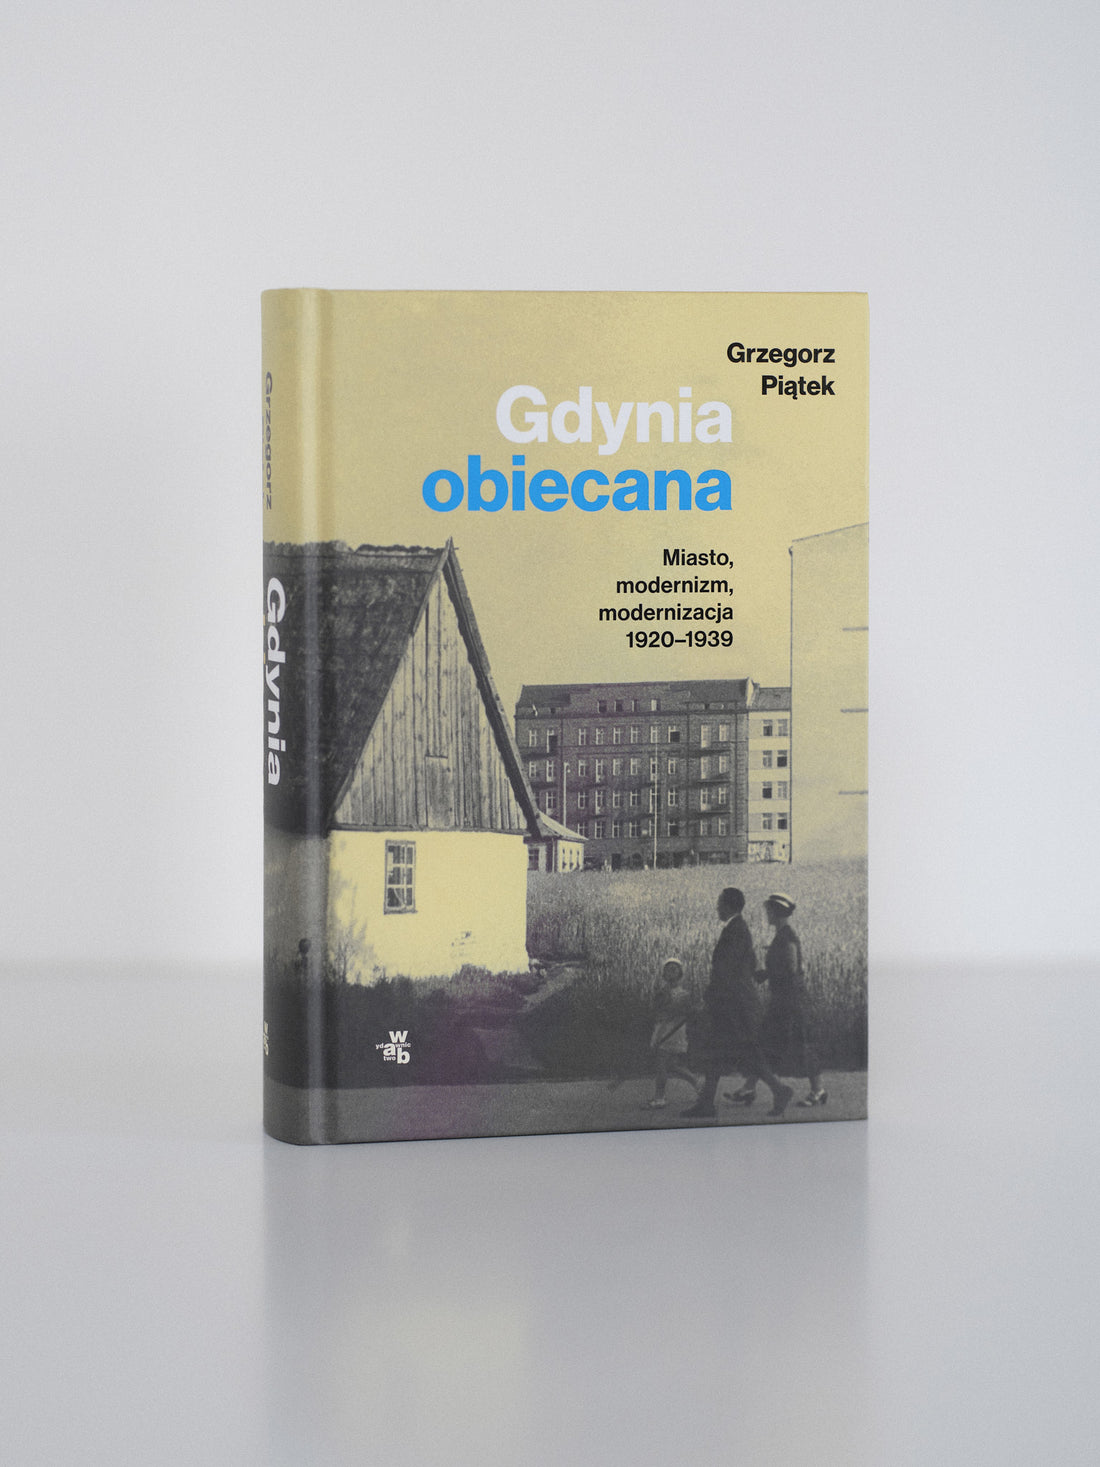 Book "Gdynia obiecana. Miasto, modernizm, modernizacja 1920-1939"